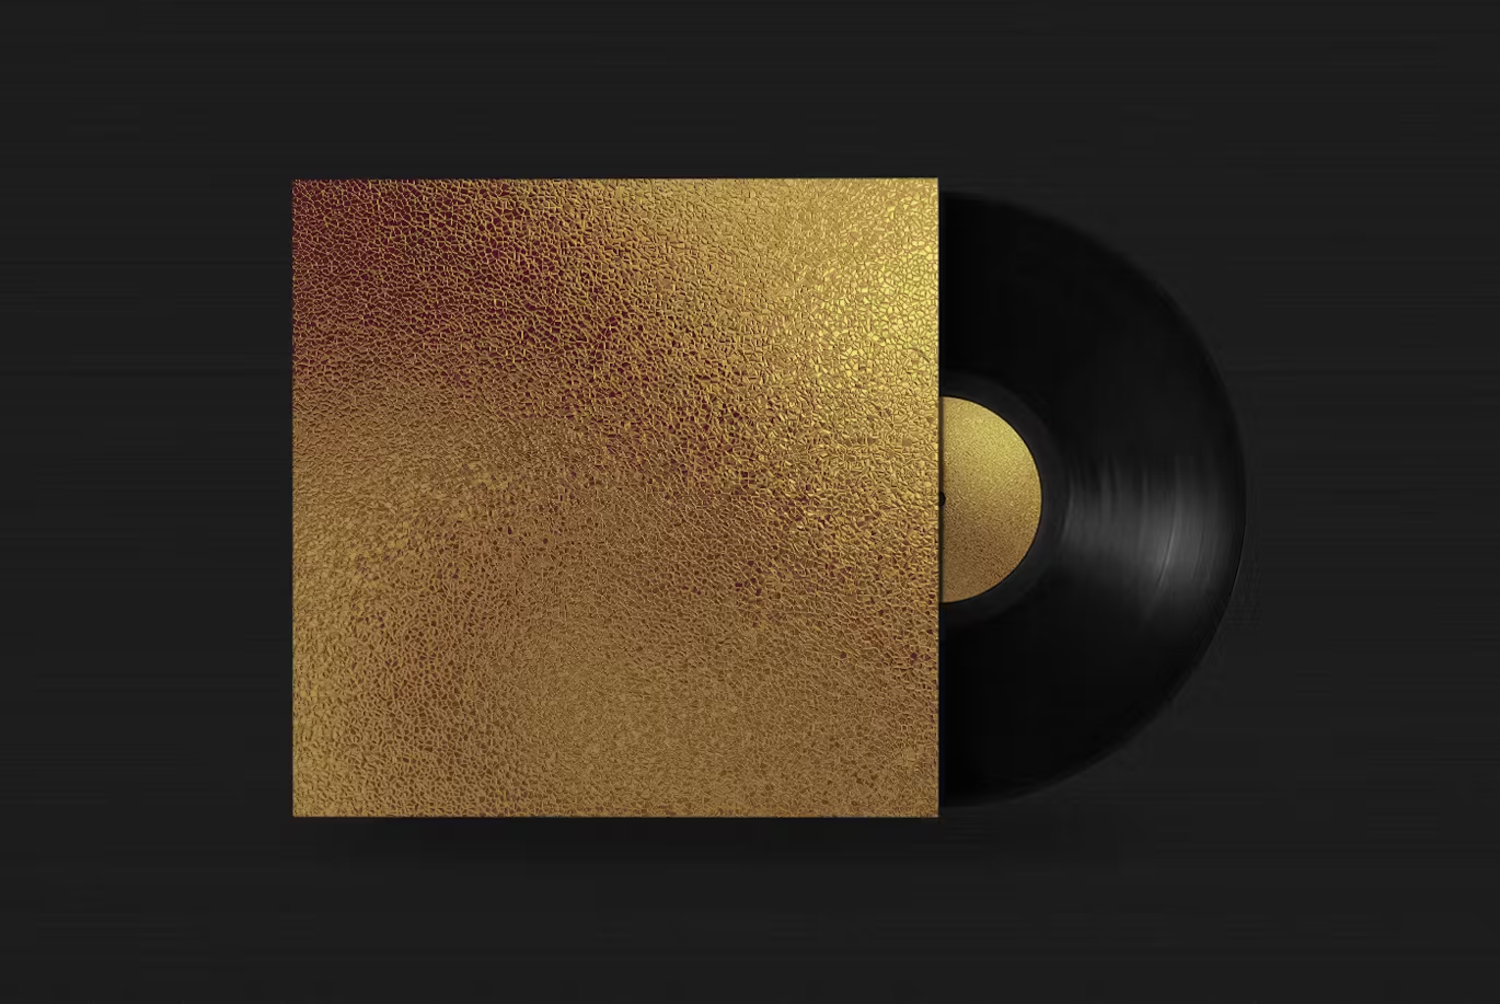 6052 创意高级金色抽象Voronoi纹理背景设计展示素材-Gold & Silver Abstract Voronoi Texture Backgrounds